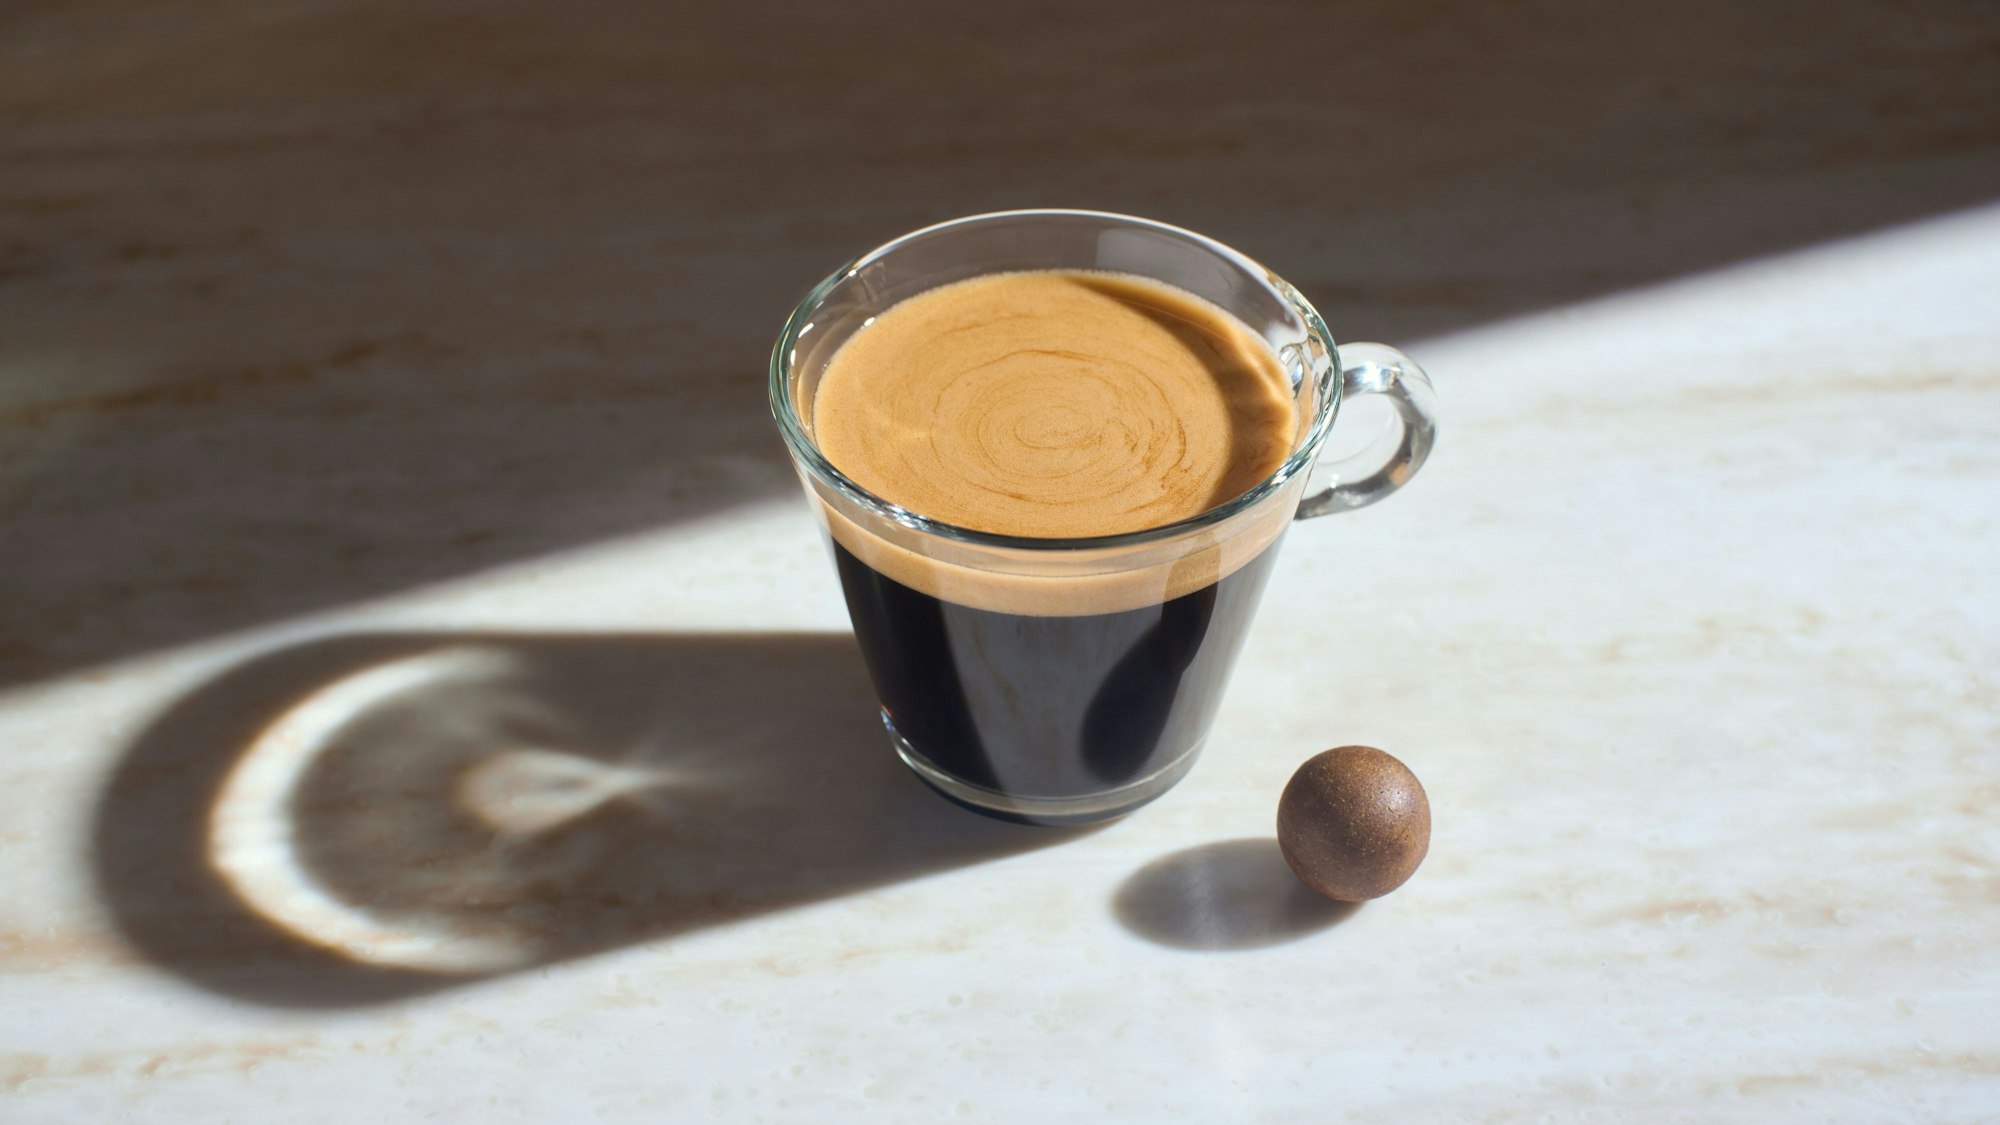 Die gepresste Kaffeekugel als Zero-Waste-Kaffeekapsel liegt neben einer Tasse Kaffee.